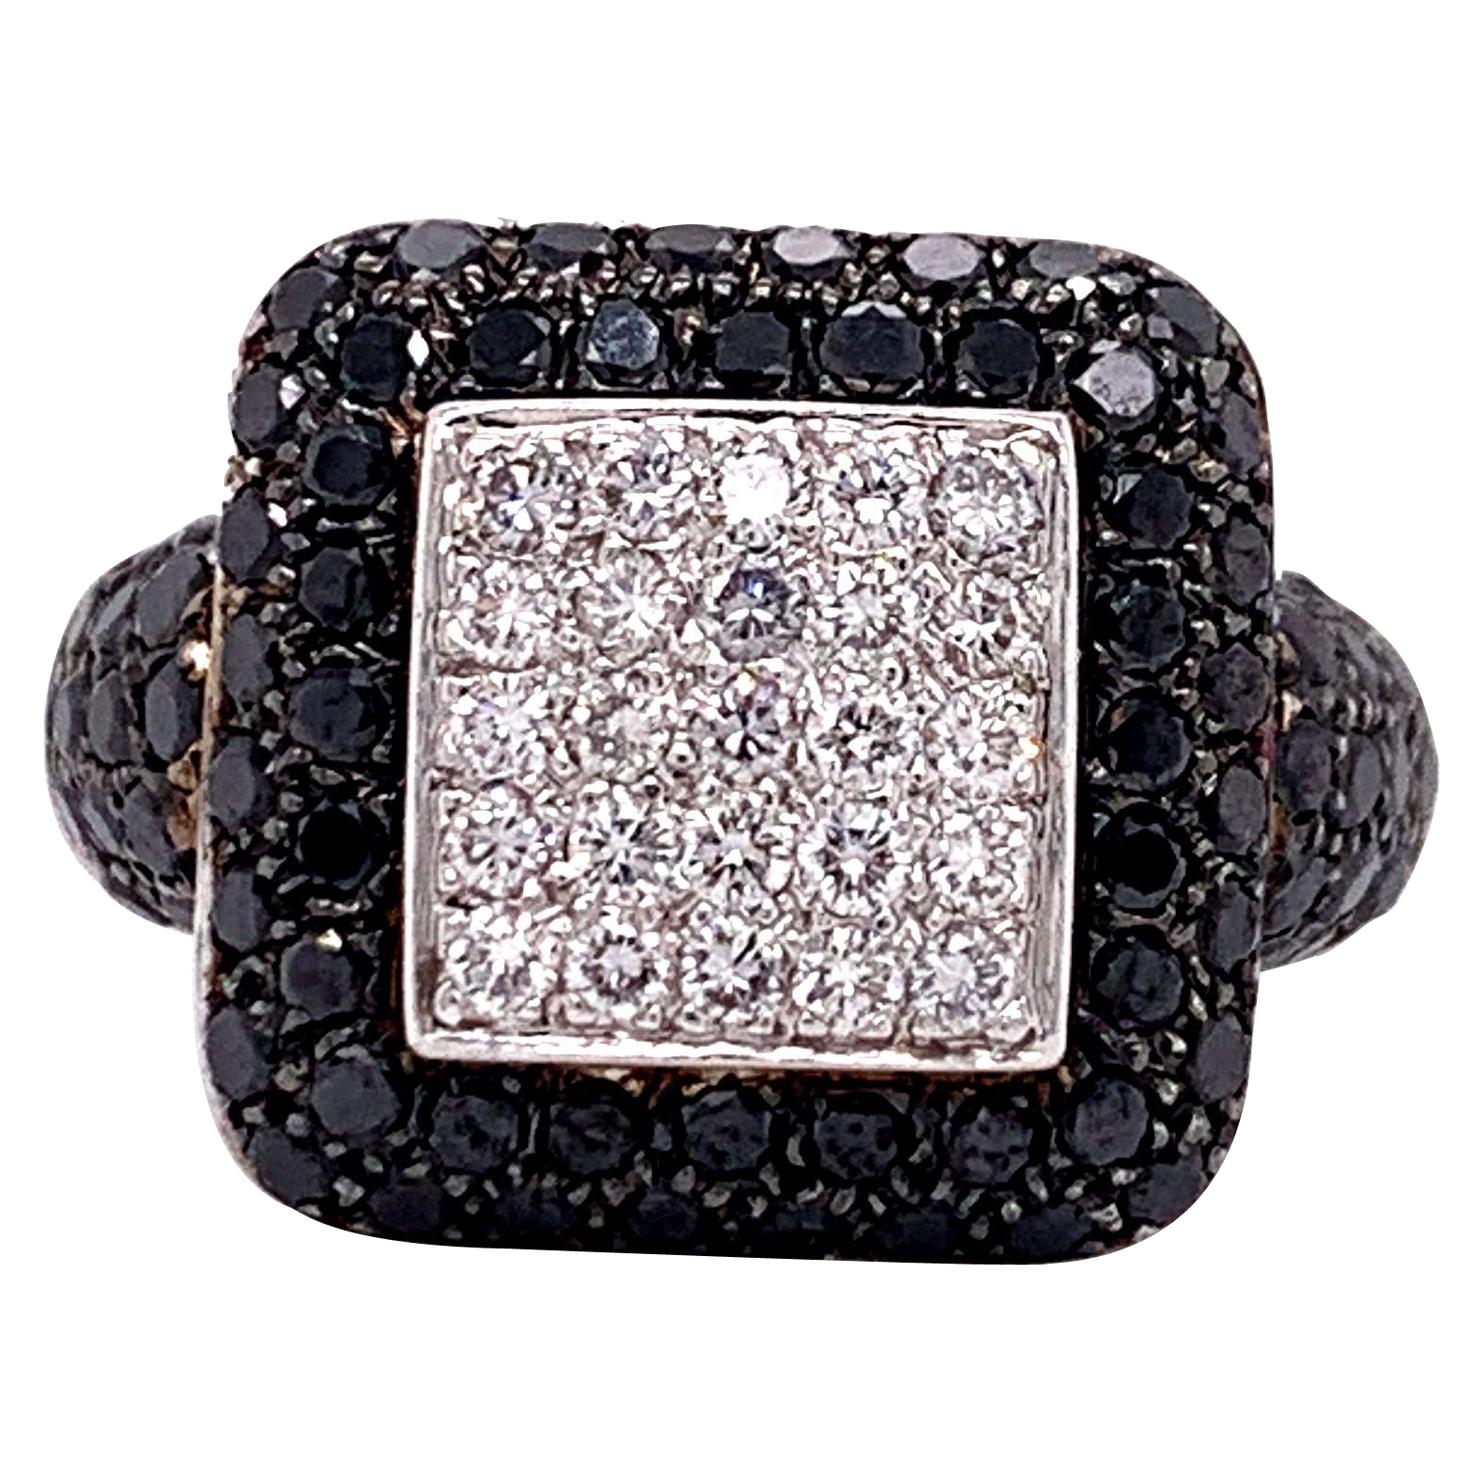 18 Karat White Gold Vintage 2.1 Carat Black and White Diamond Cluster Ring